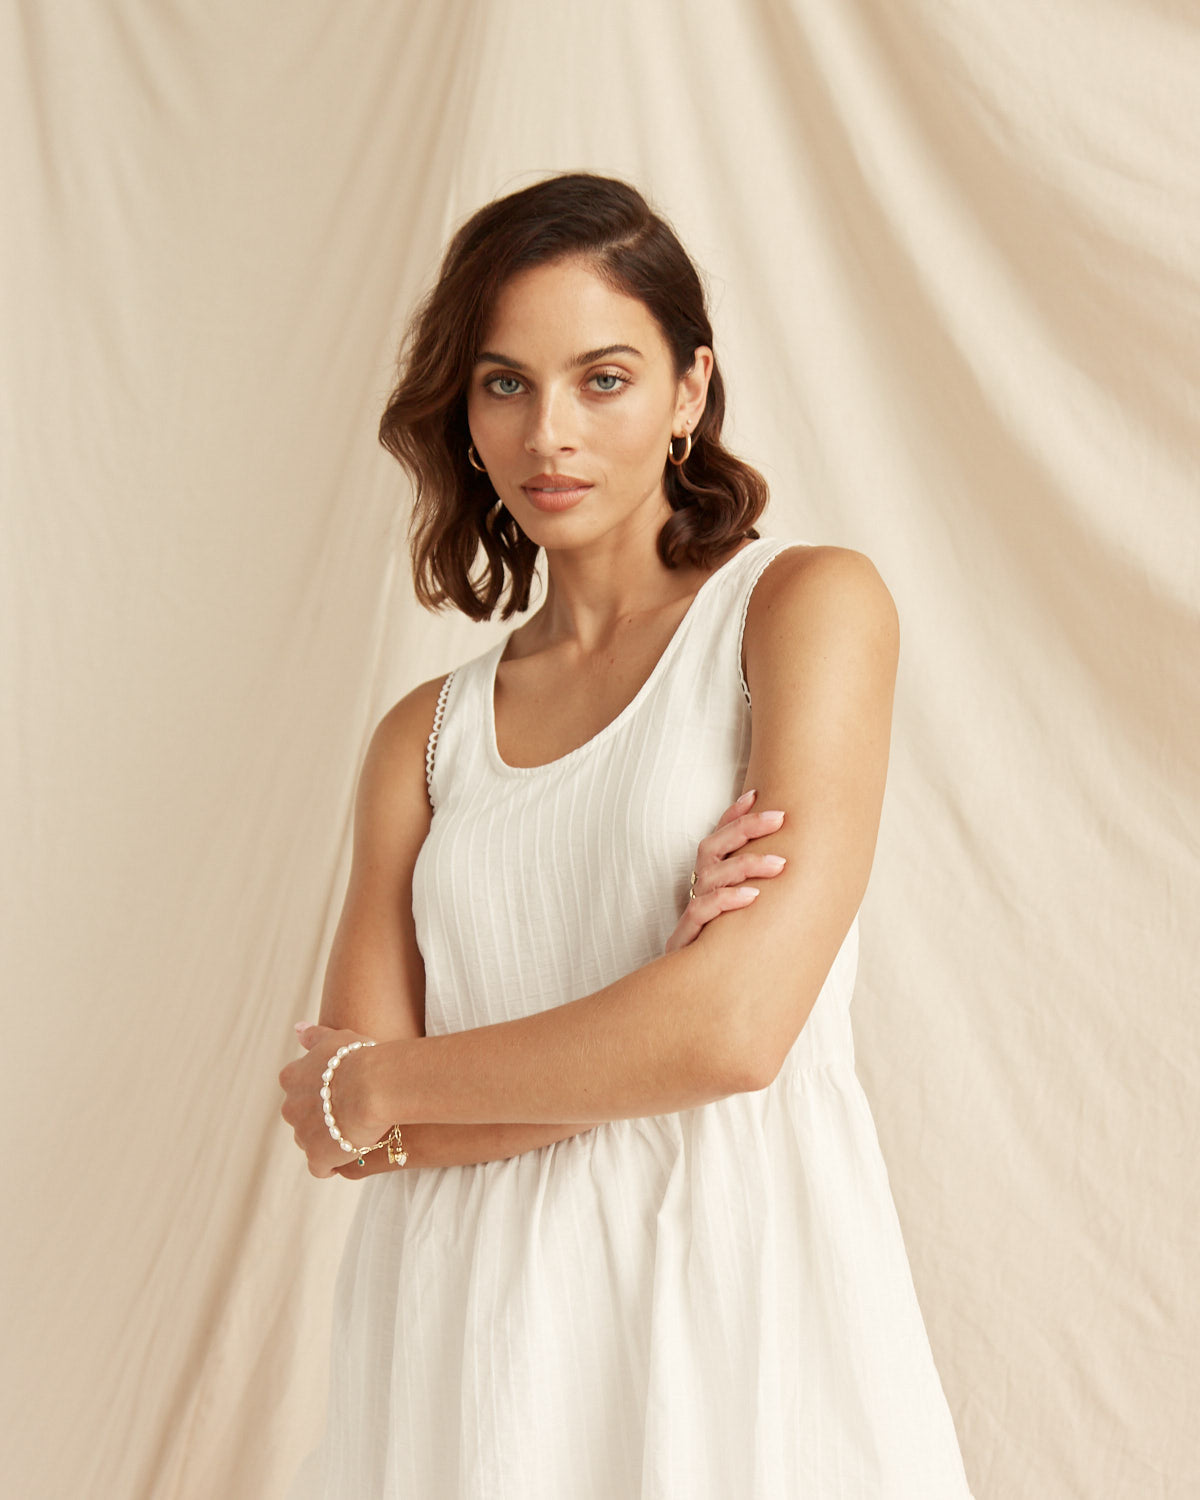 Woman wearing the xyla white mini dress